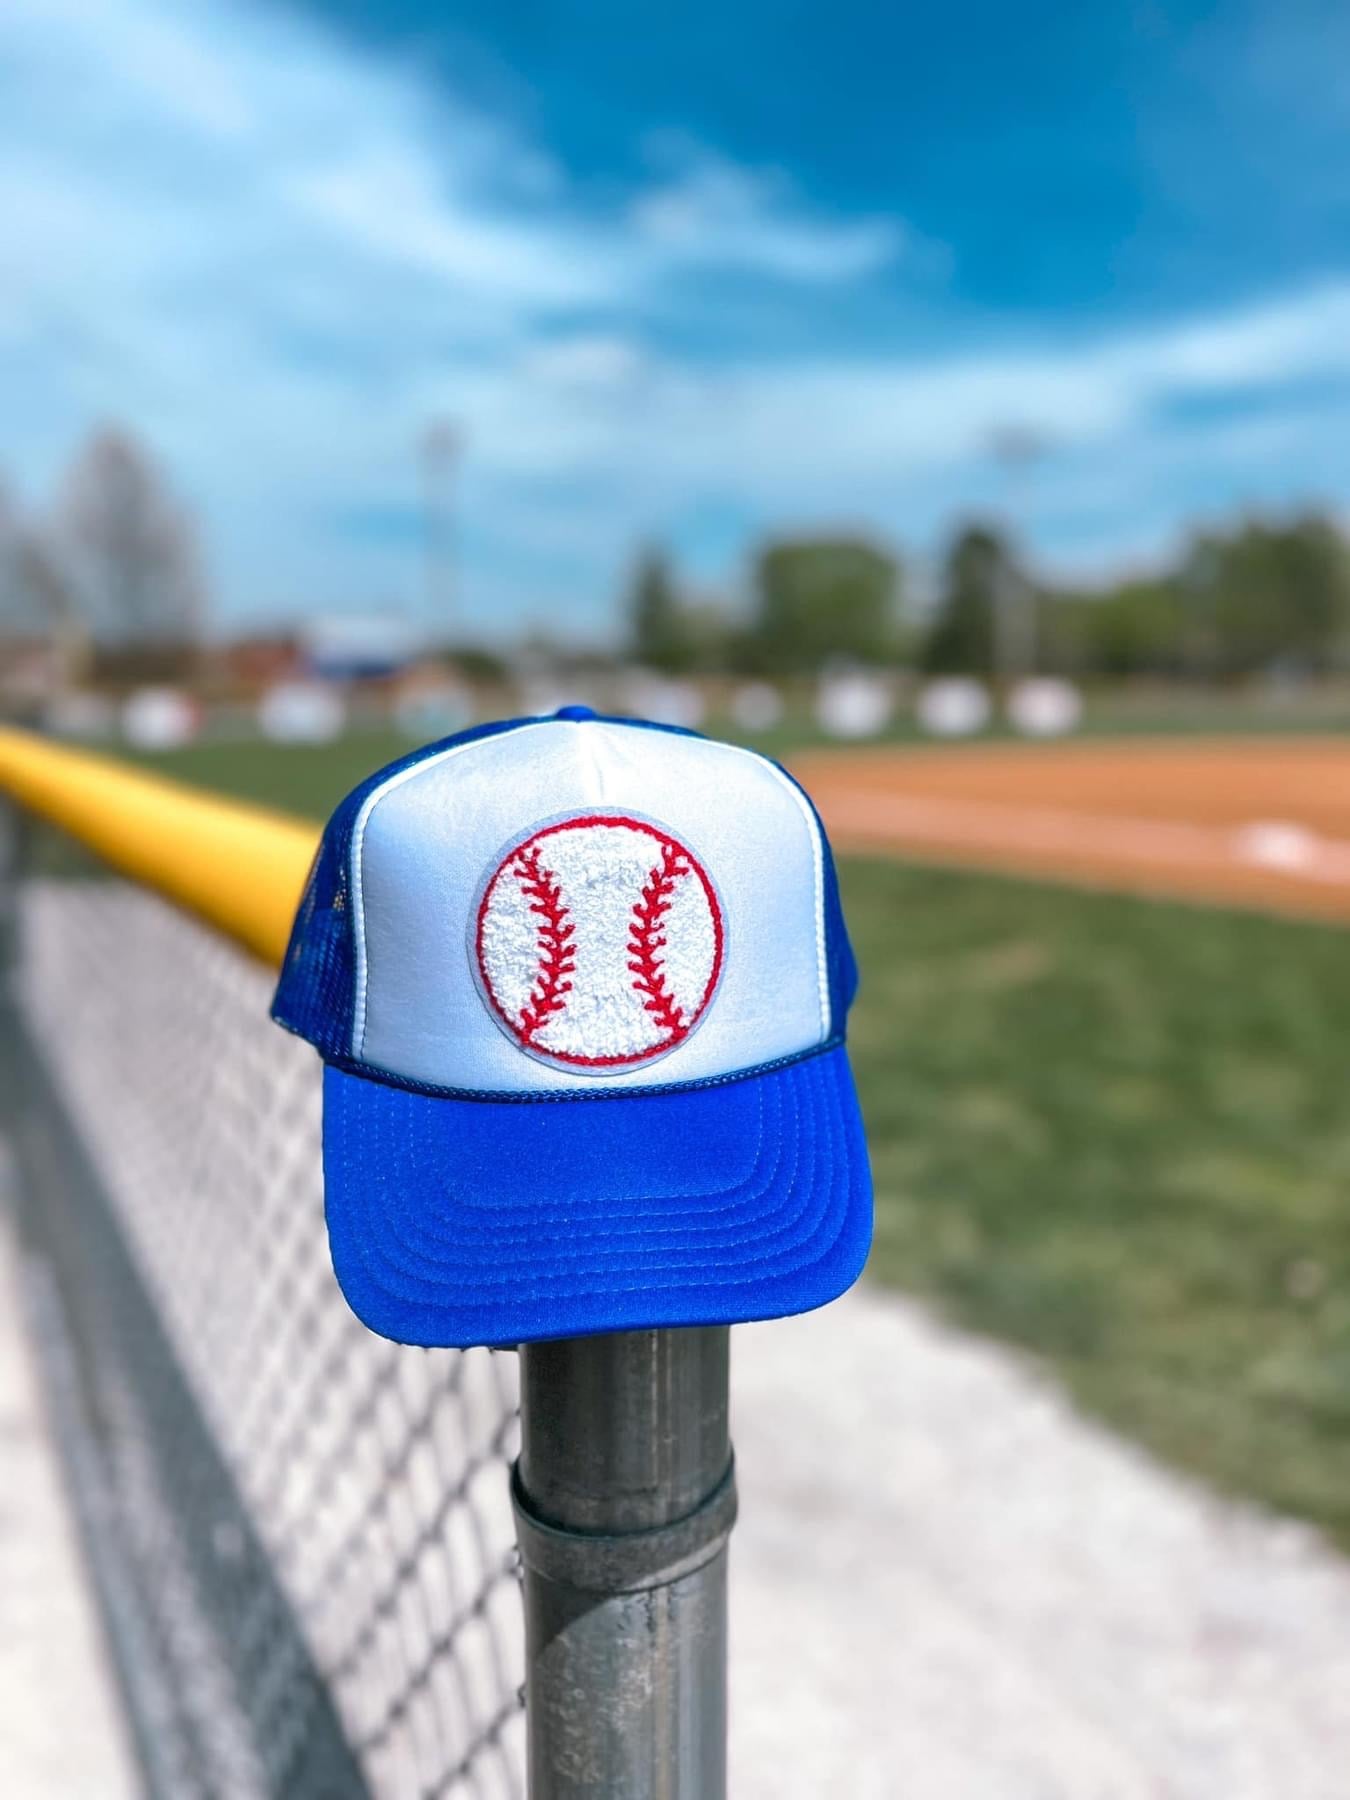 Baseball Trucker Hat